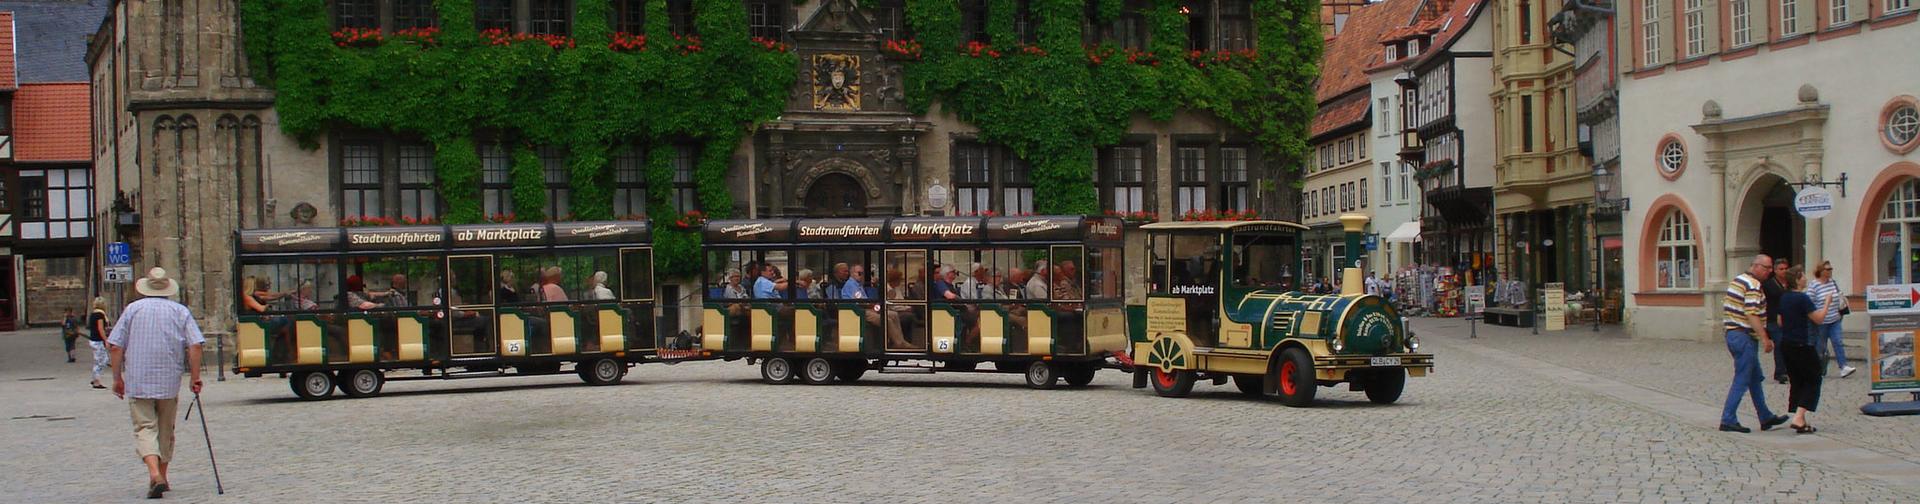 Bimmelbahn on the market square in Quedlinburg